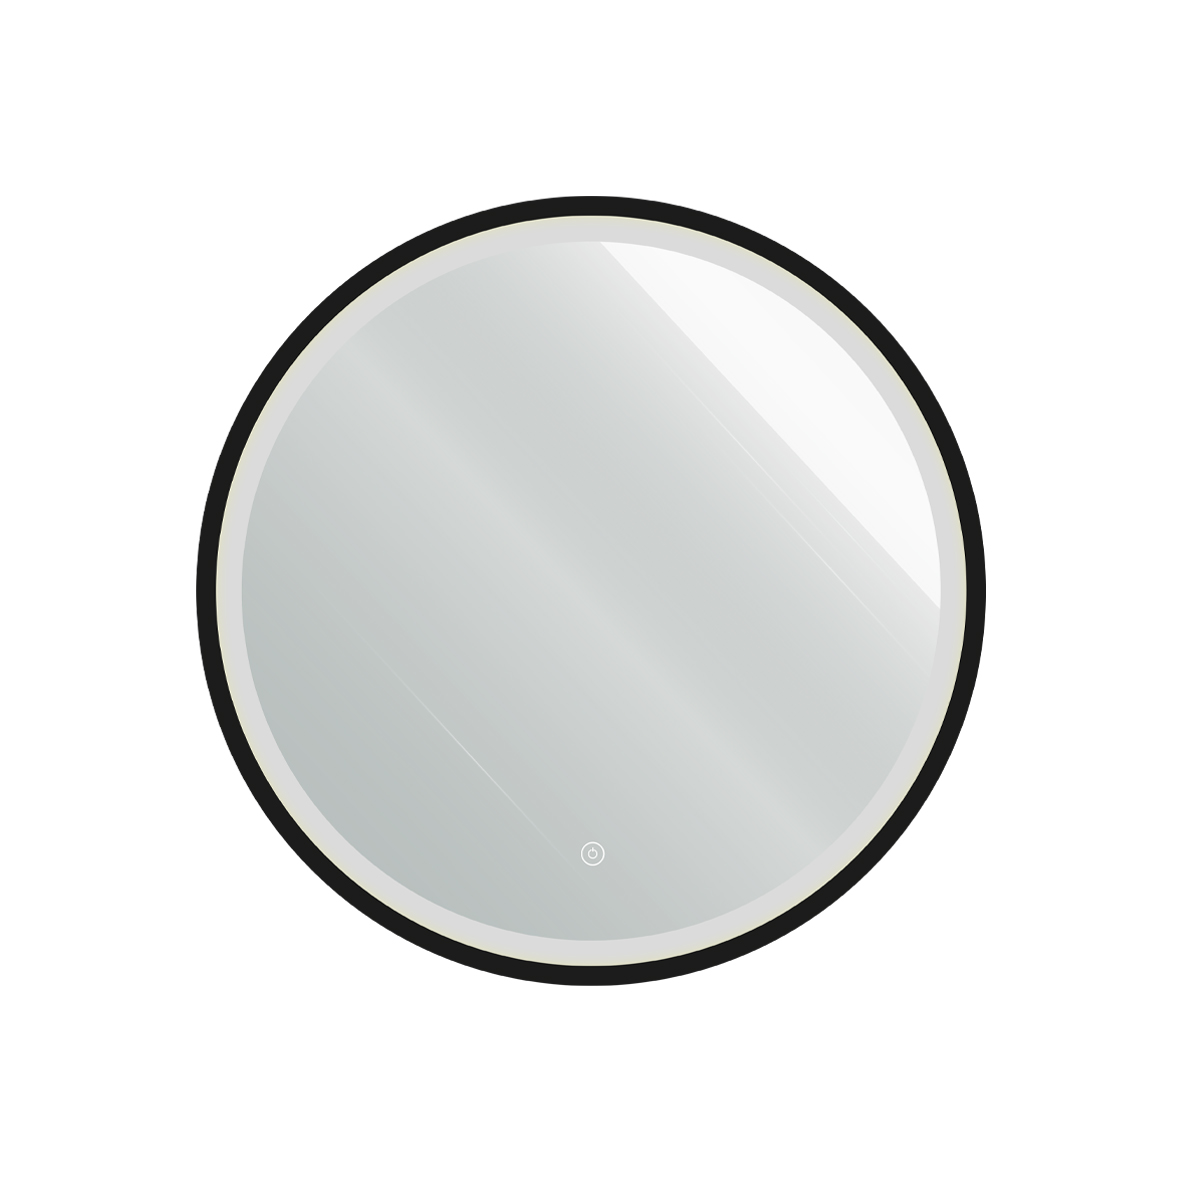 САНАКС - Зеркало D 600 мм, сенсорное, с внутренней LED подсветкой, черное обрамление, круглое